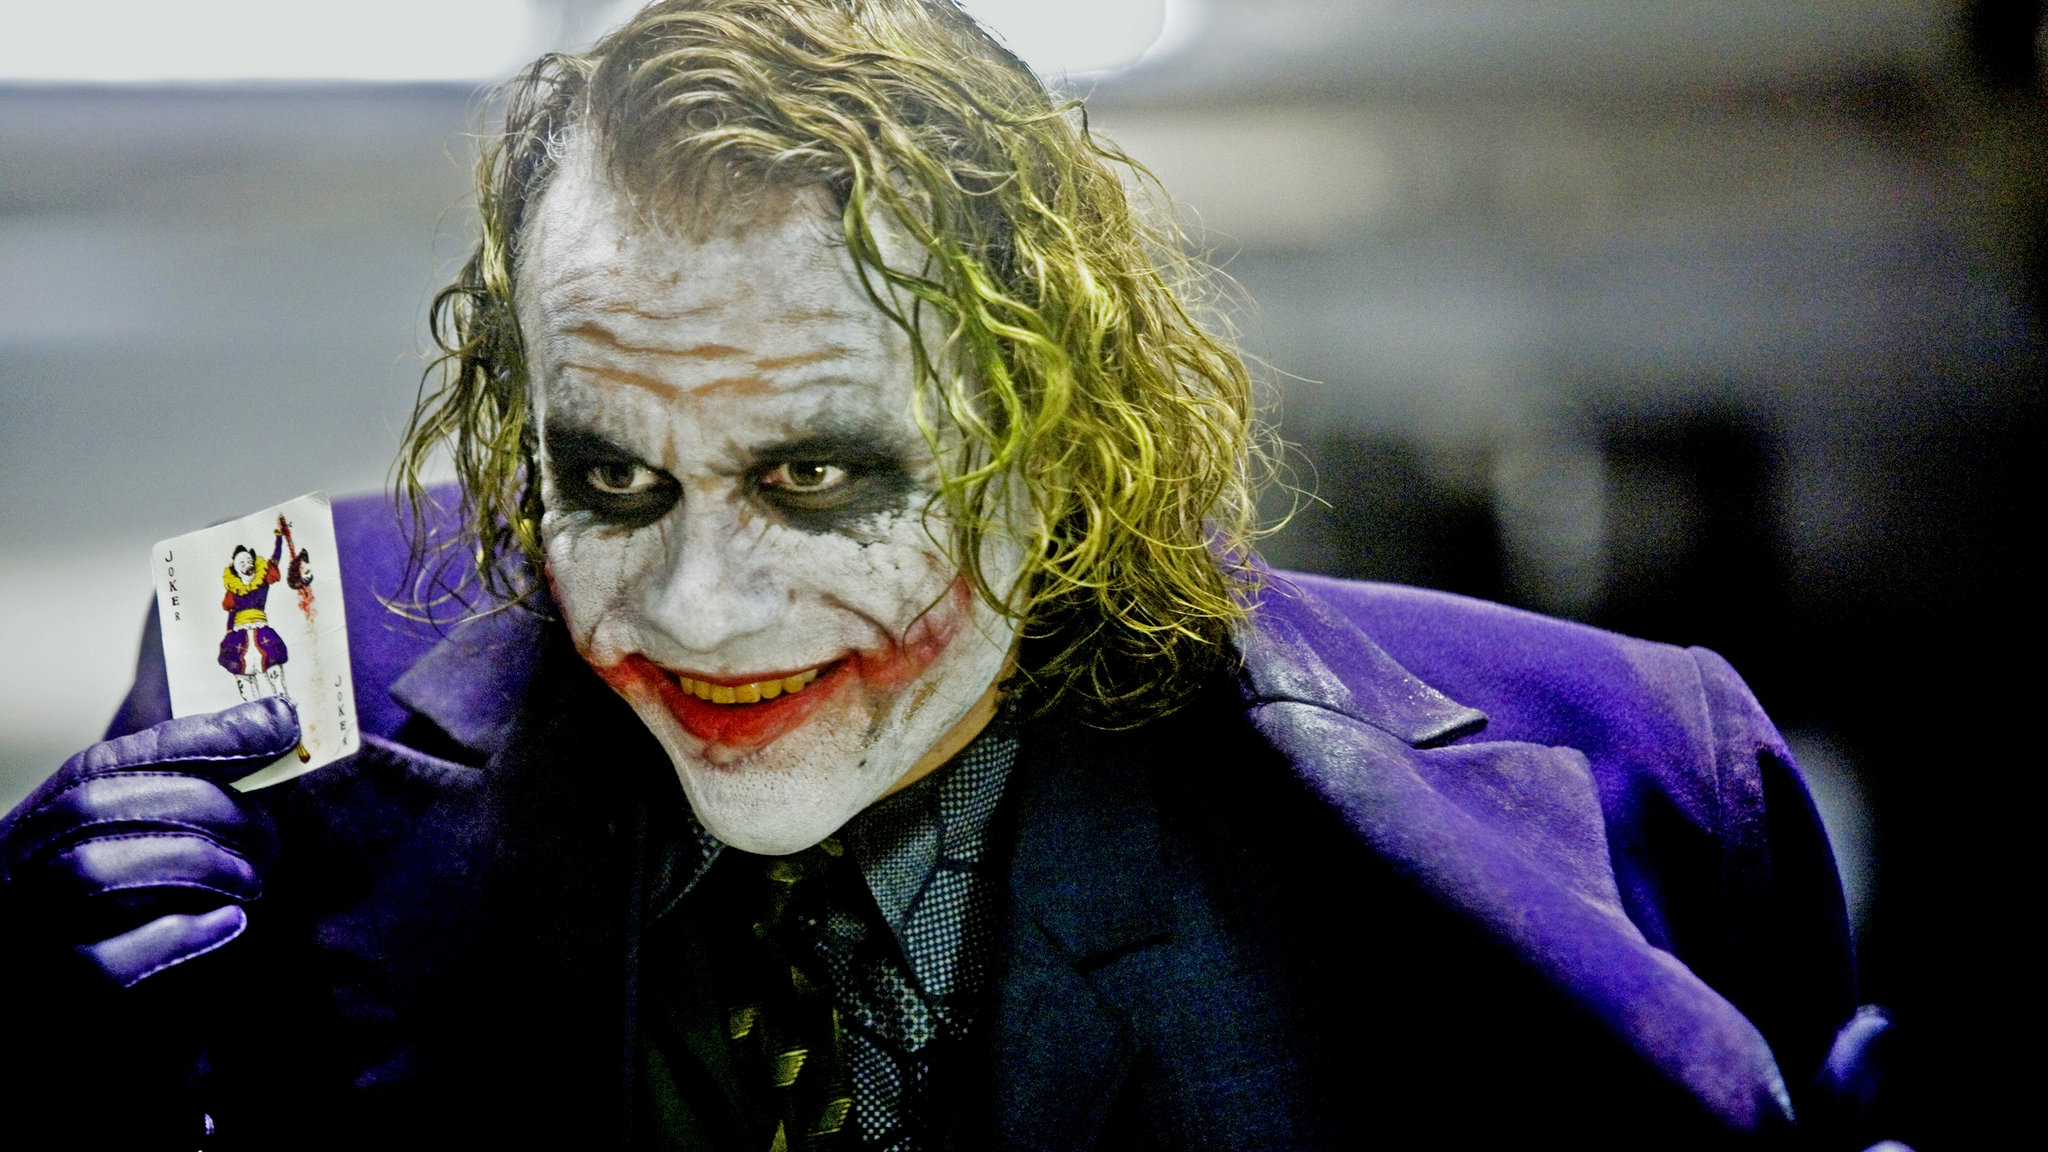 Joker.jpg - 523.34 KB